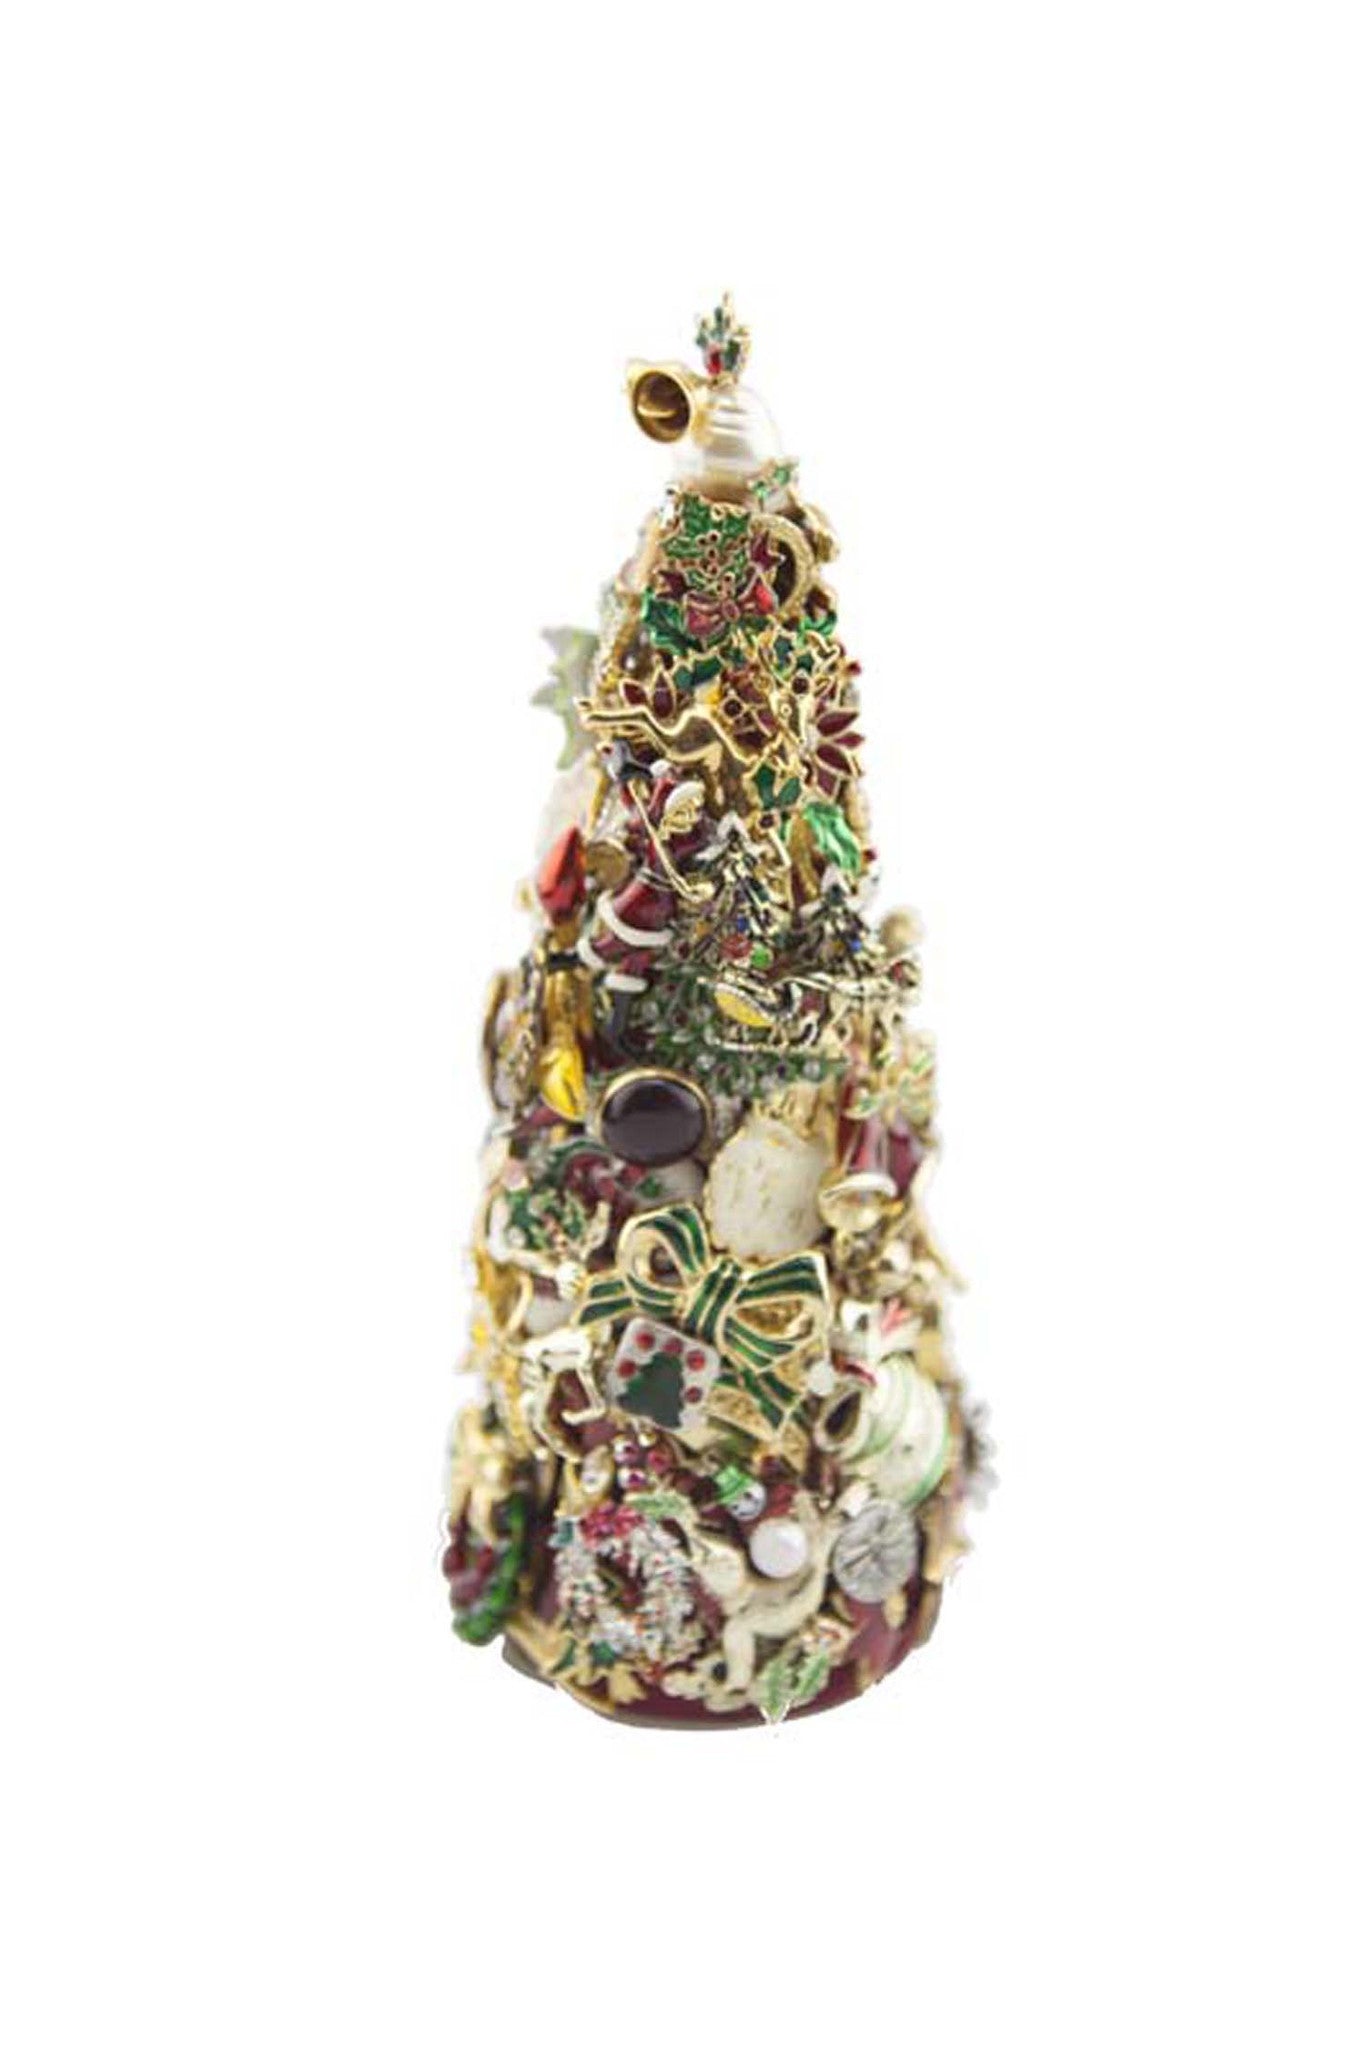 Beyond The Jewel Box-8" Tree/Christmas Colors